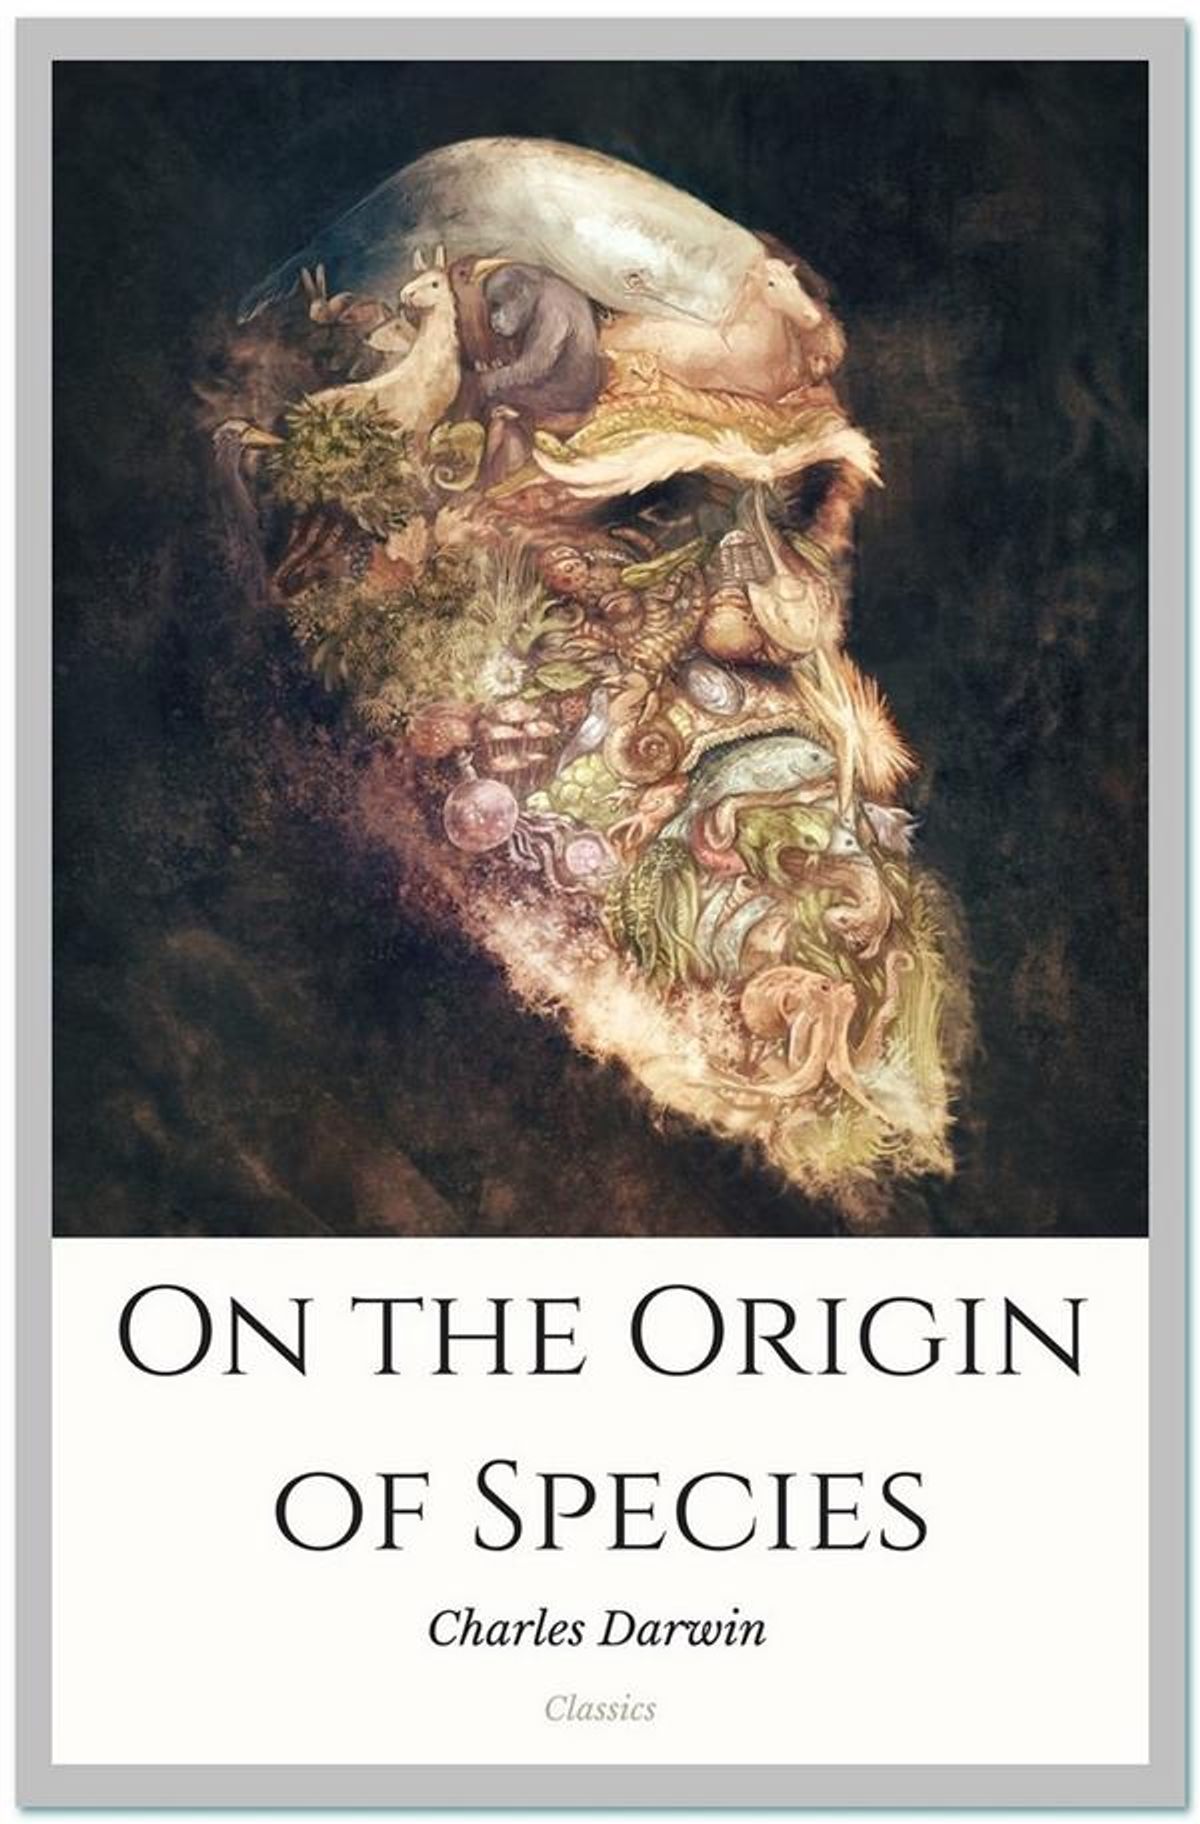 Charles-Darwin-on-the-origin-of-species